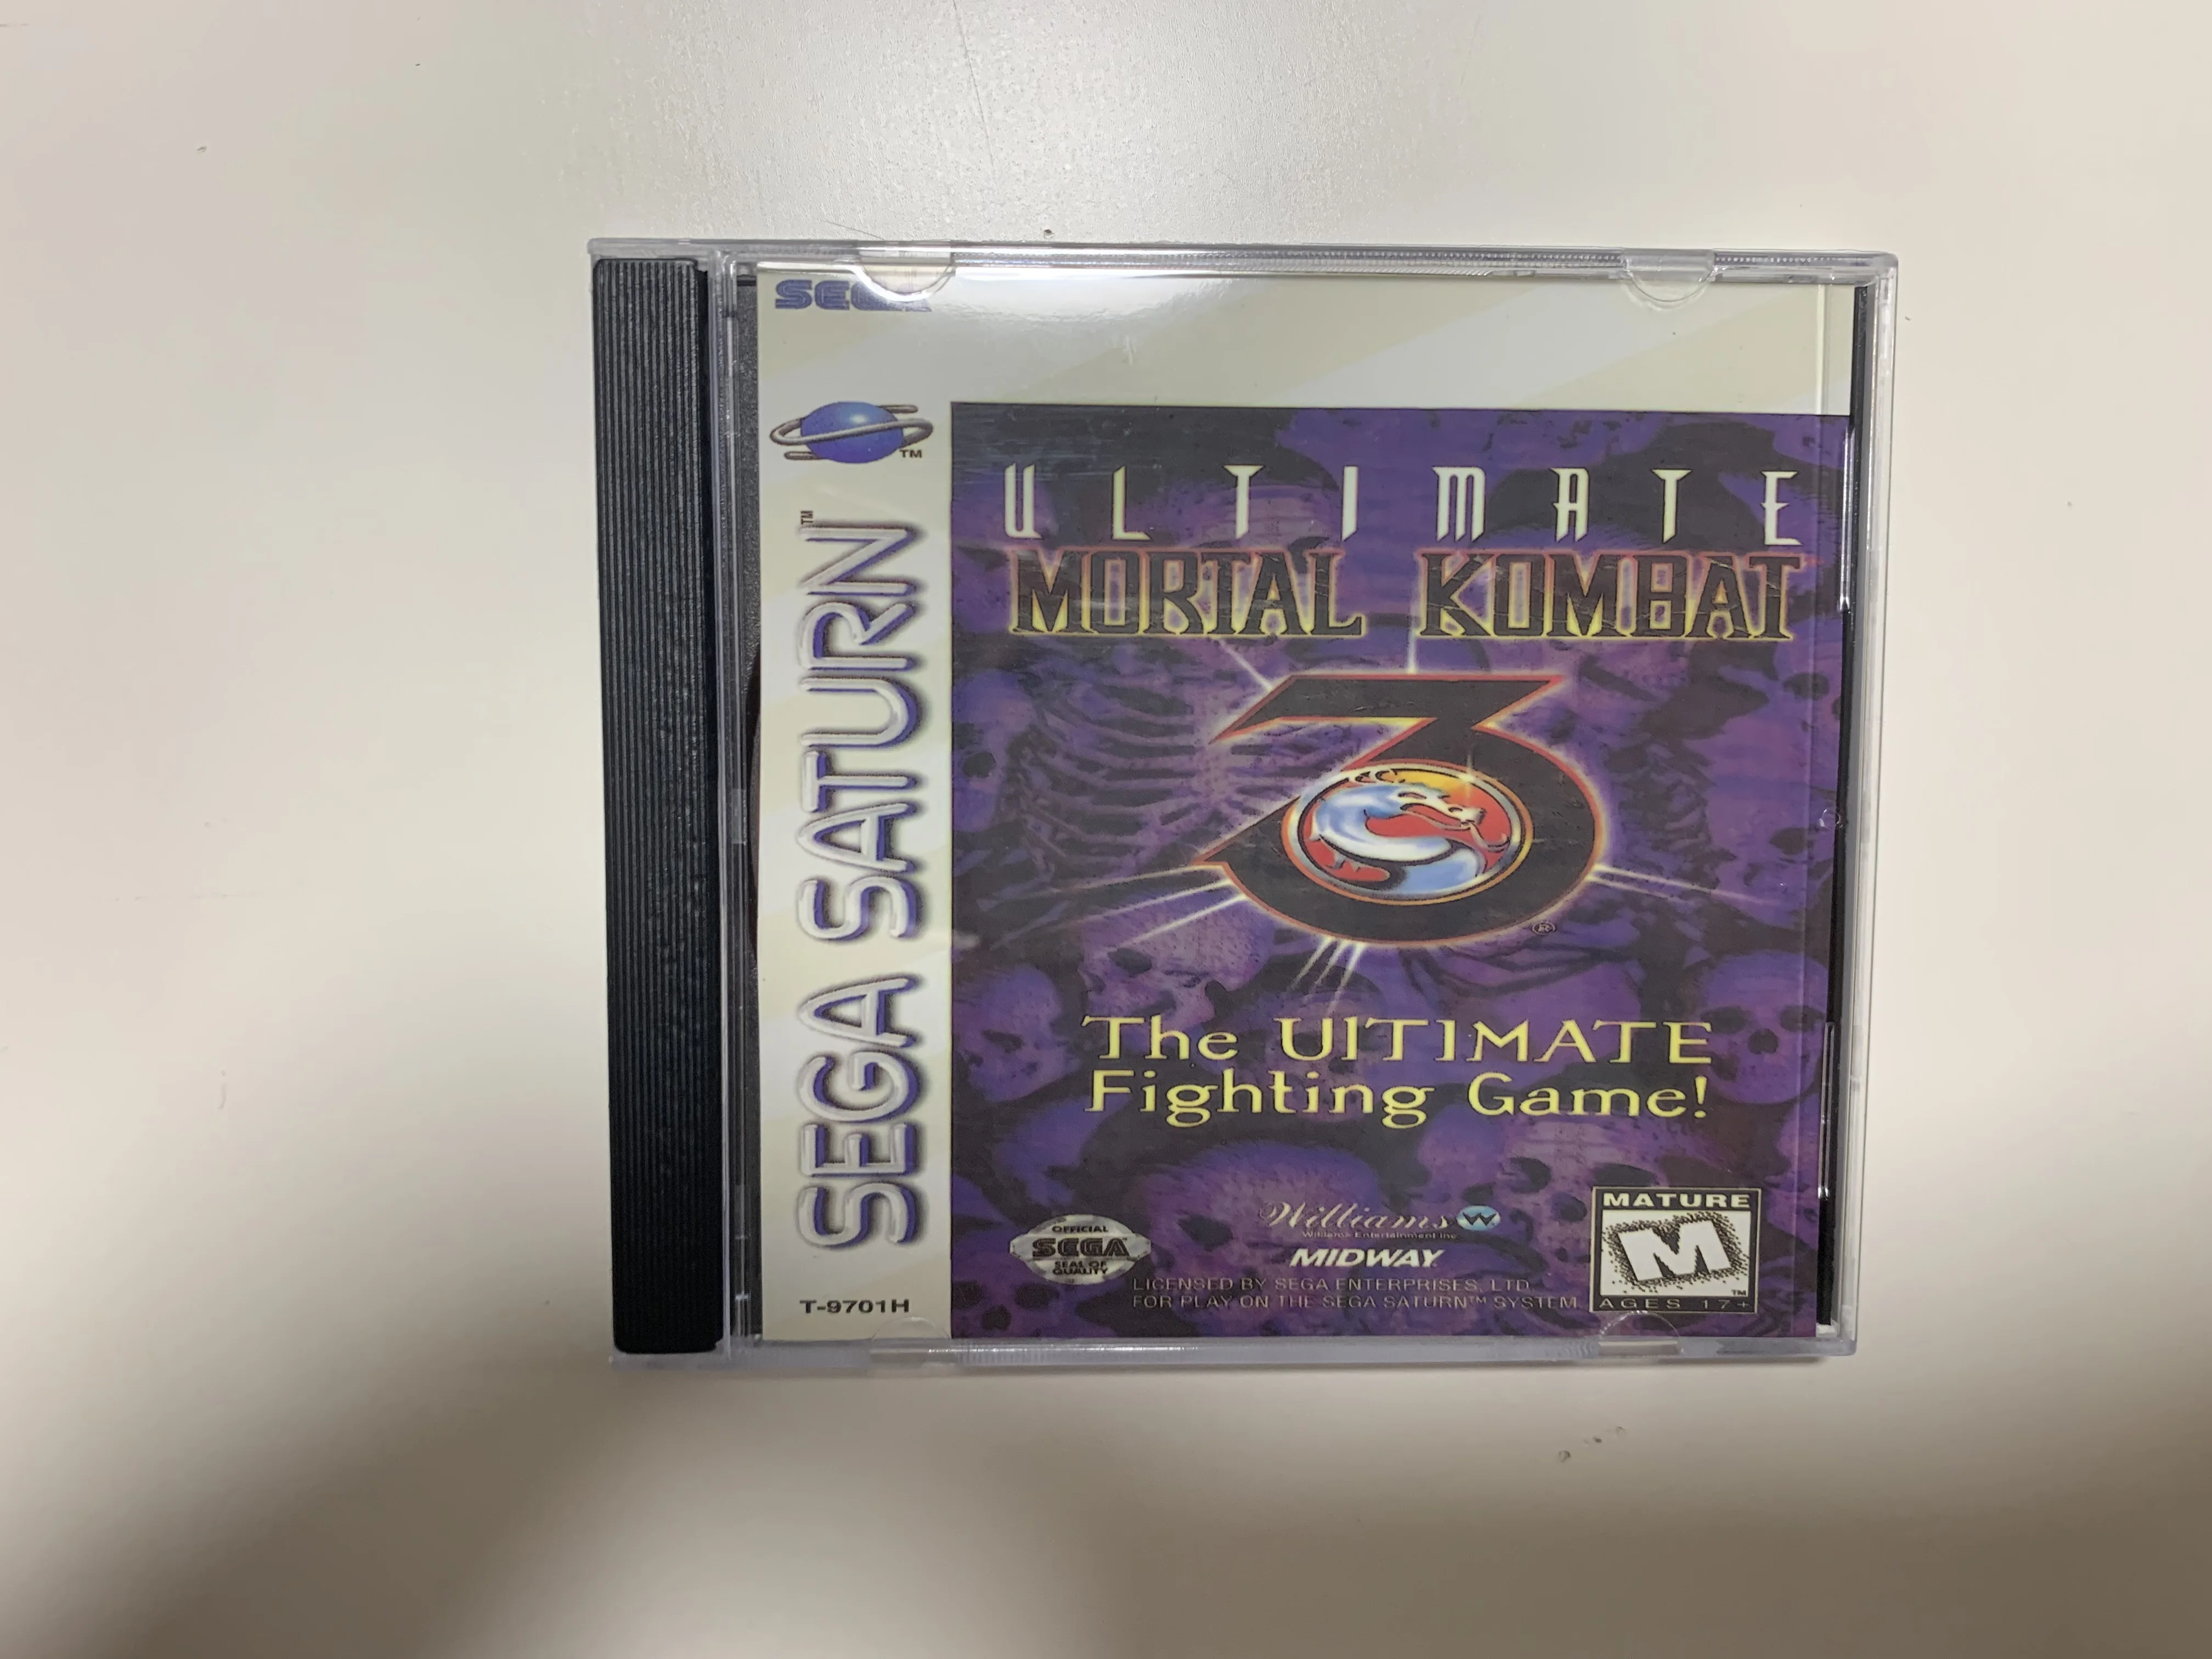 Saturn Копия диска с игрой Ultimate Mortal Kombat 3 Разблокировка игровой консоли SS Оптический привод Ретро-видео Игра для прямого чтения